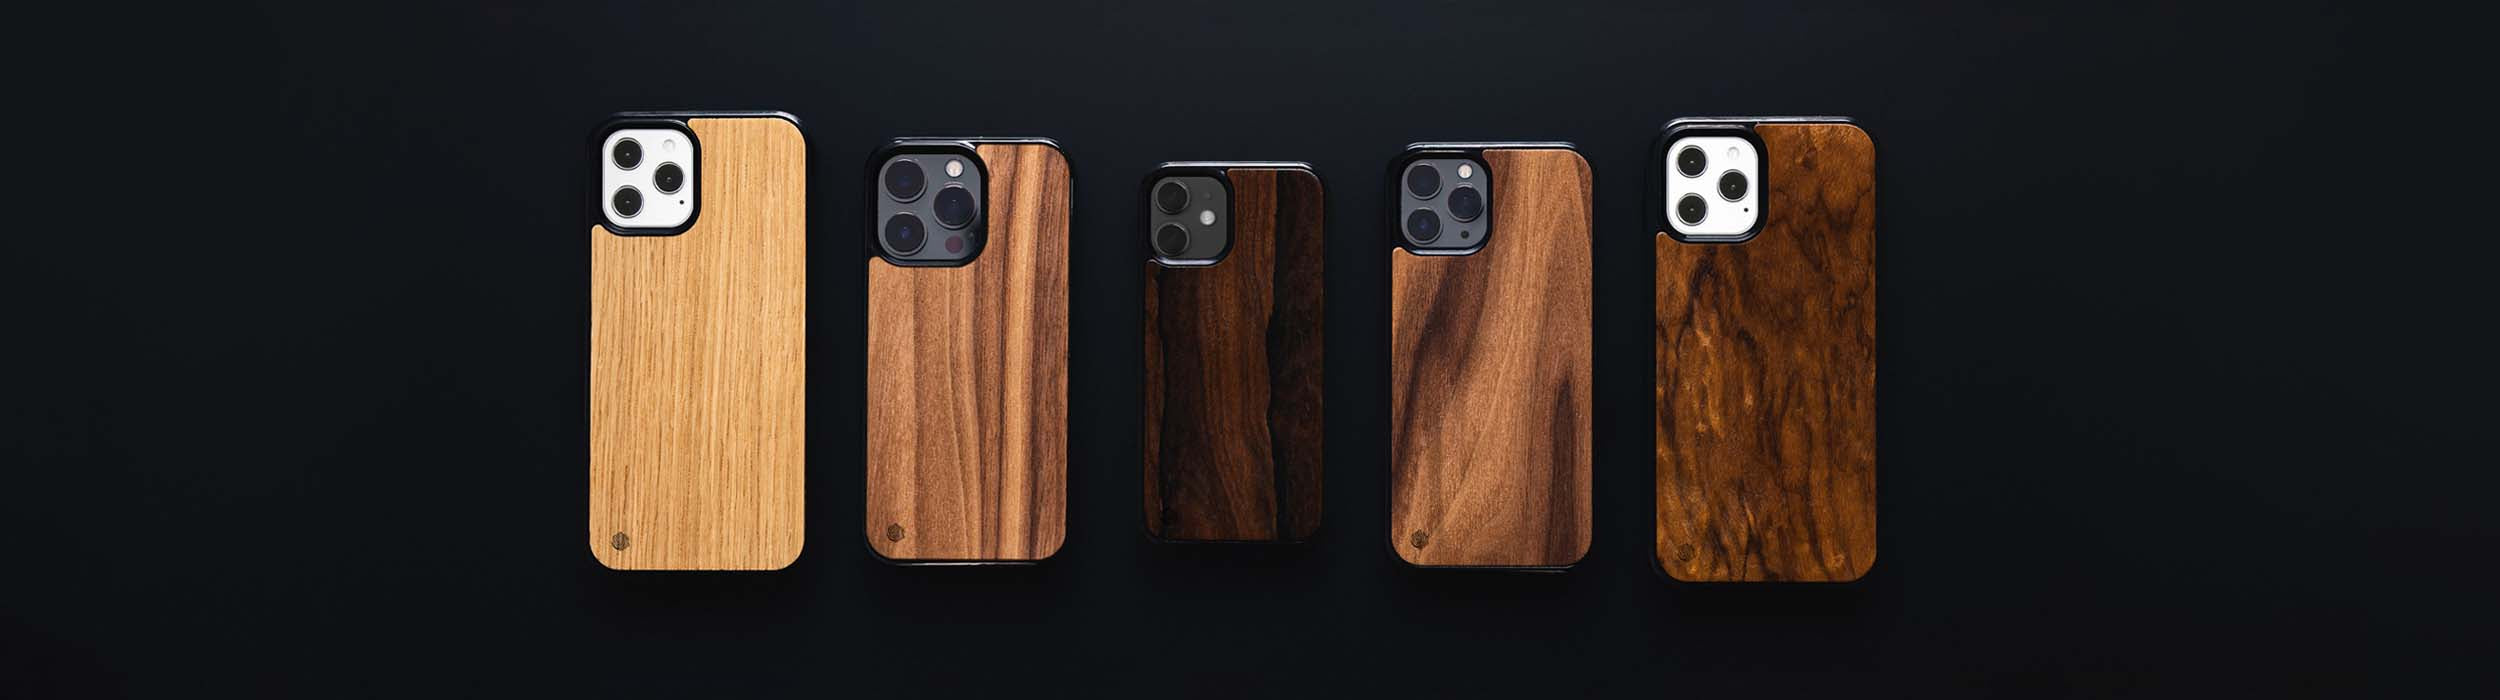 Apple iPhone 11 Handyhüllen aus Holz